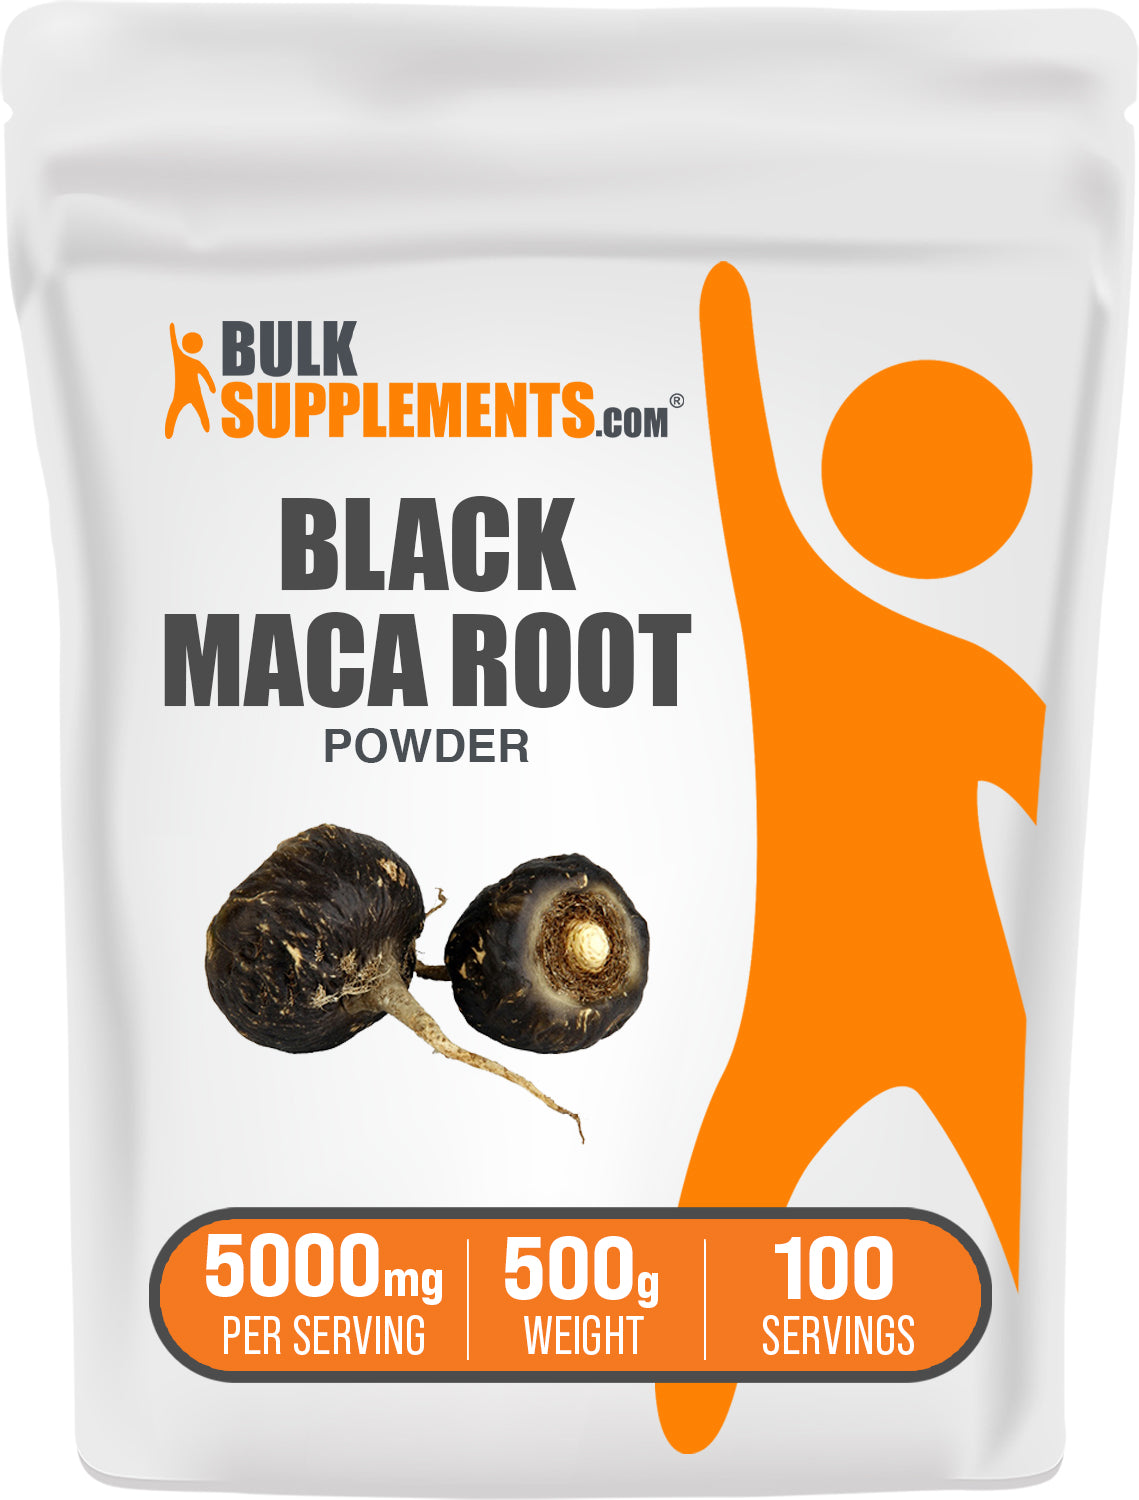 BulkSupplements.com Black Maca Powder 500g bag